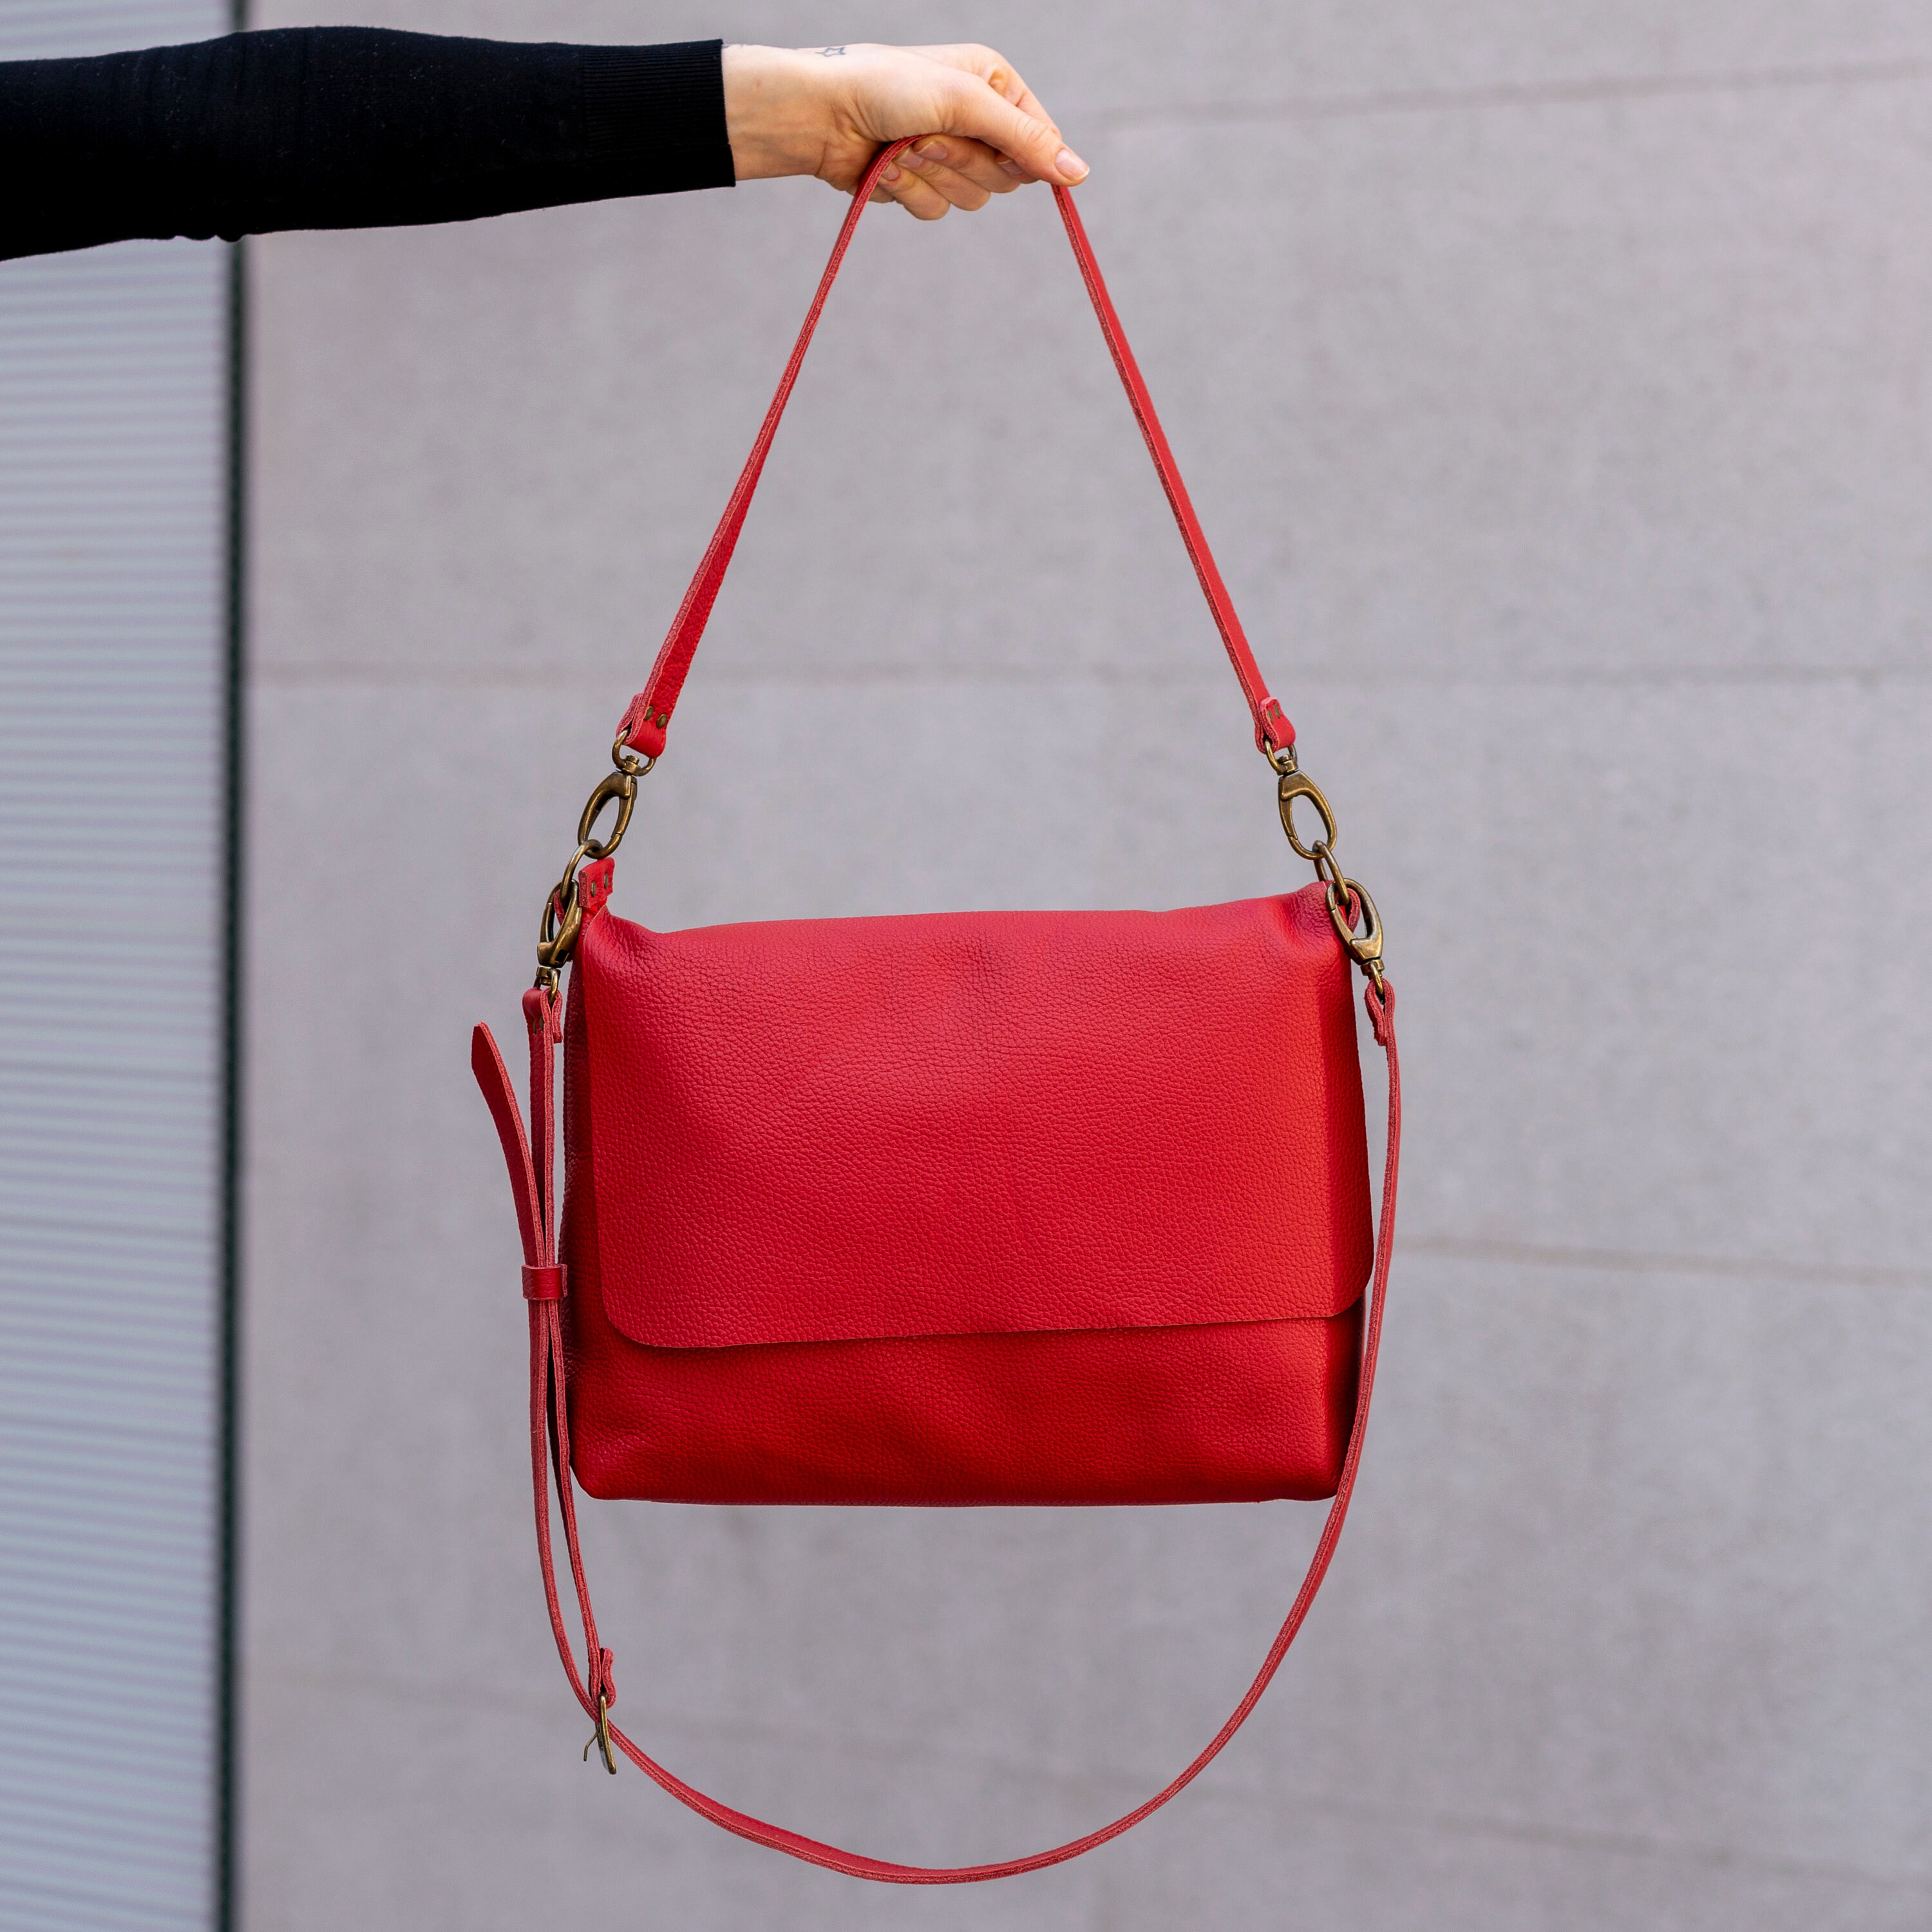 Leather Bag for Women Black Leather Bag Leather Handbag | Etsy